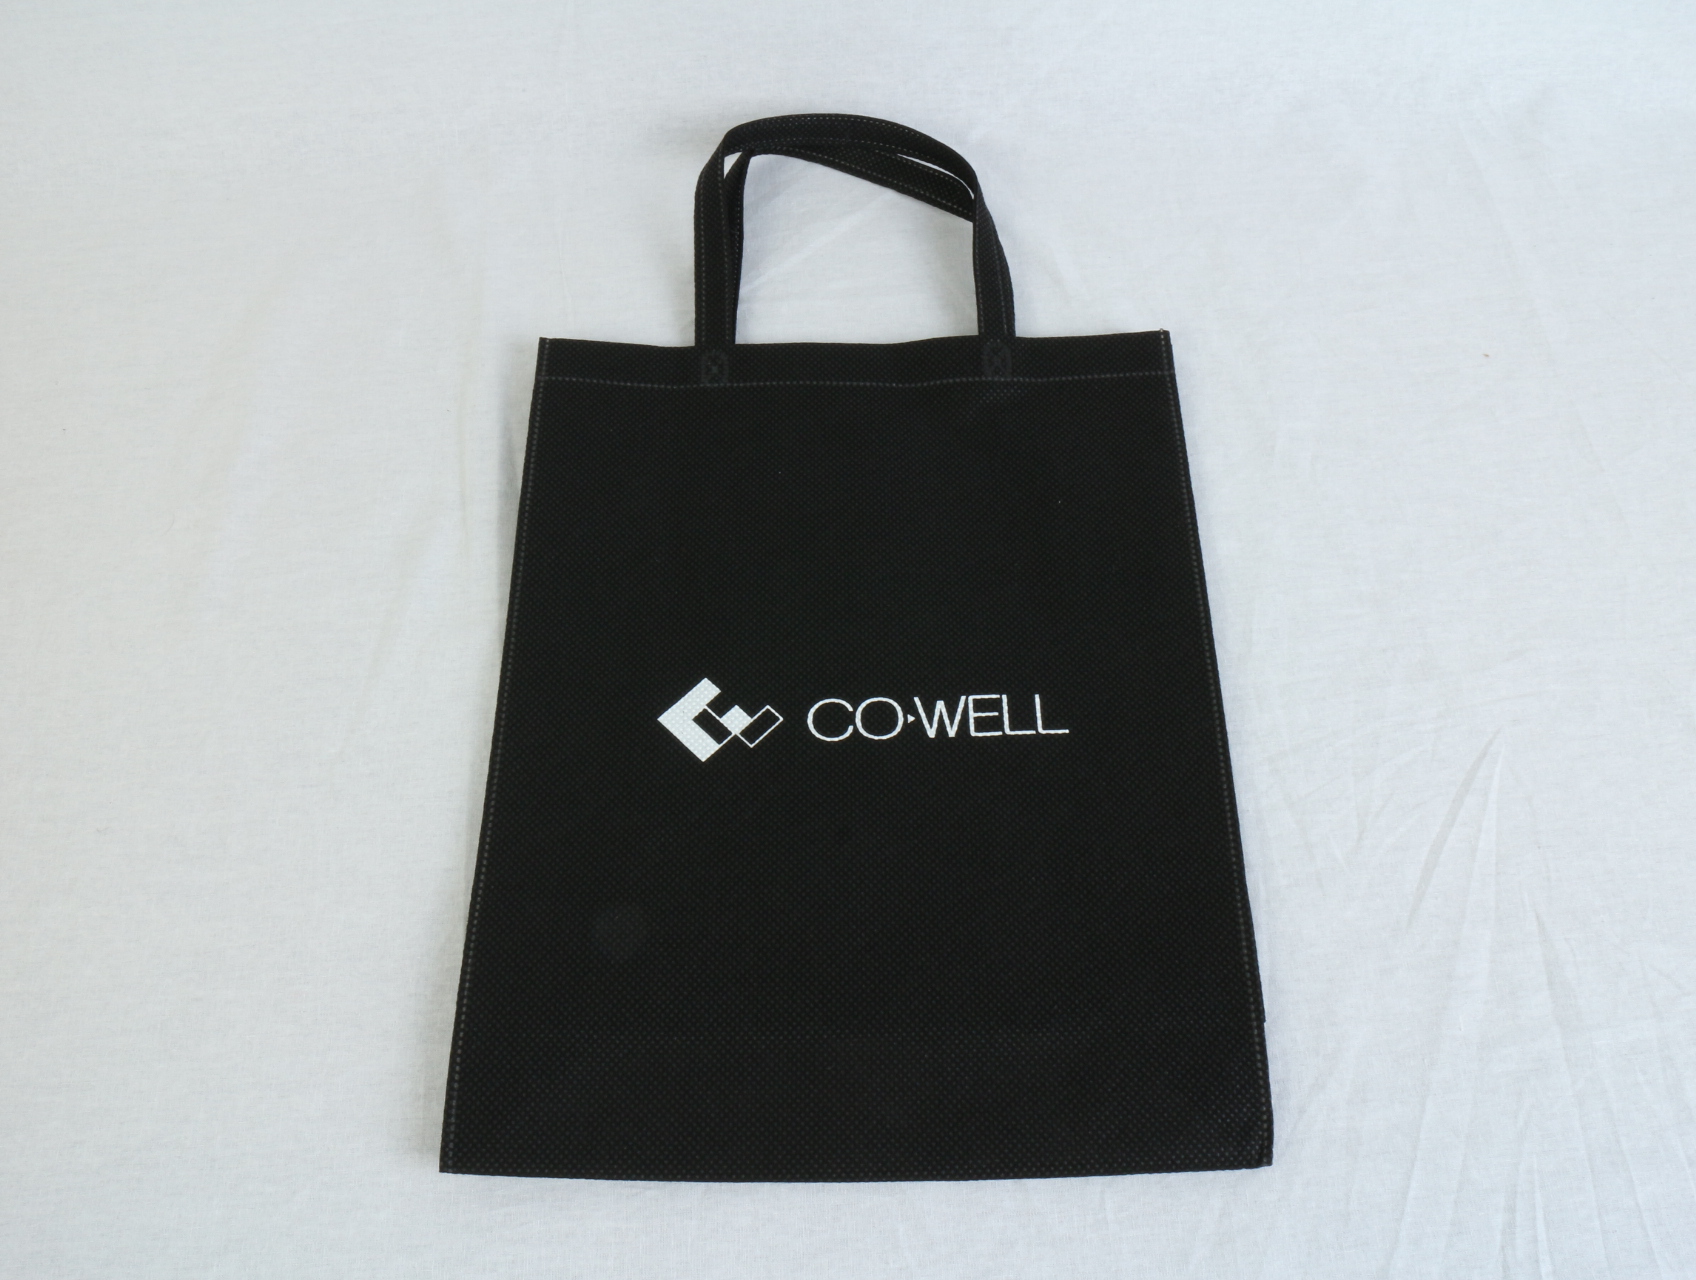 オフショア開発コンサルティングなどをされています会社様のオリジナル不織布バッグです。